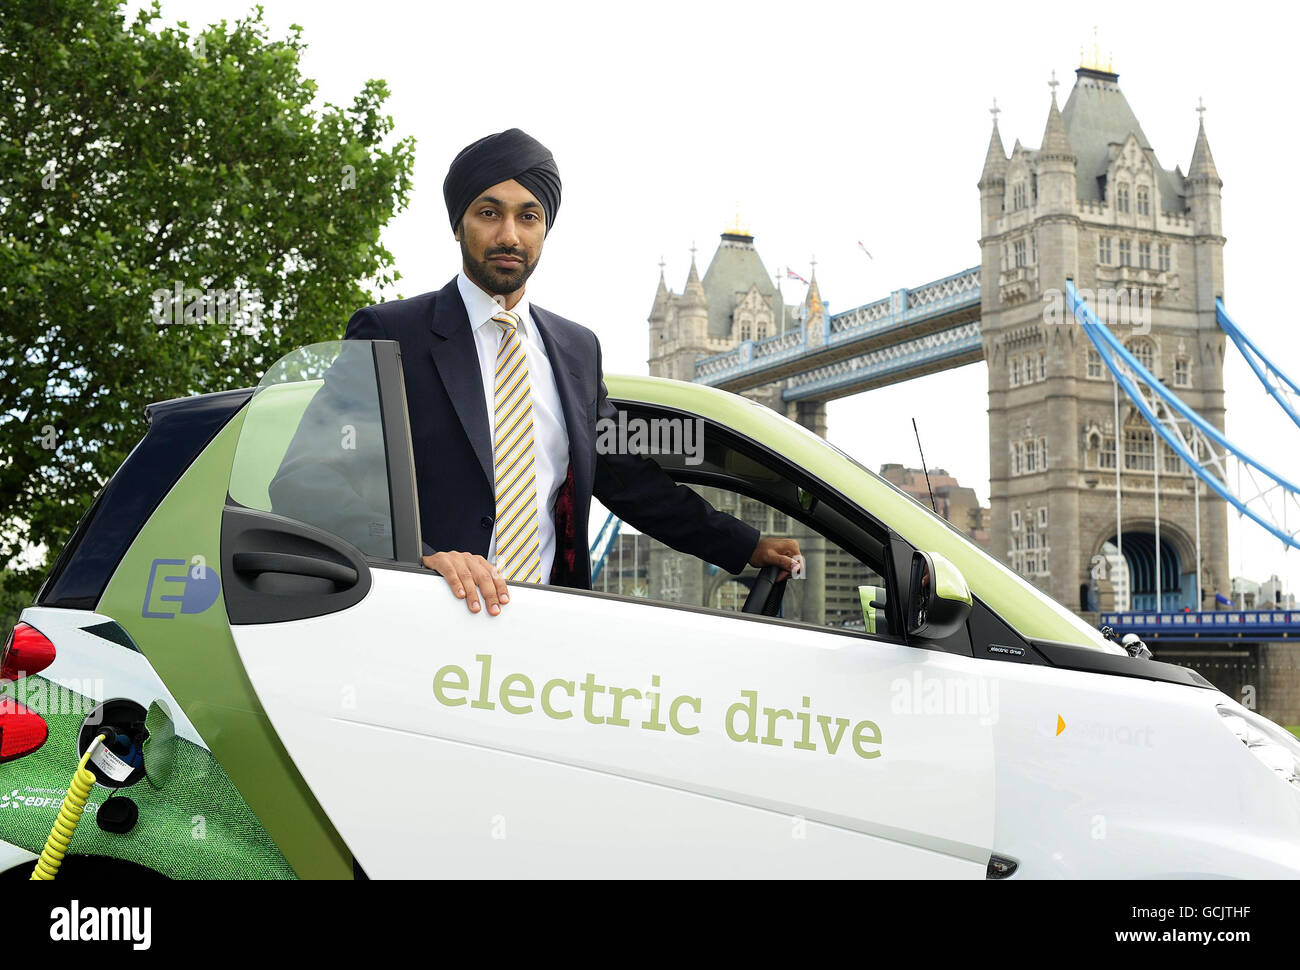 Kulveer Ranger, Verkehrsberater des Londoner Bürgermeisters Boris Johnson, mit einem smart fortwo Electric drive car, bei der Londoner Einführung des größten Verbraucherversuchs für Elektrofahrzeuge in Großbritannien auf Potters Fields im Zentrum von London. Stockfoto